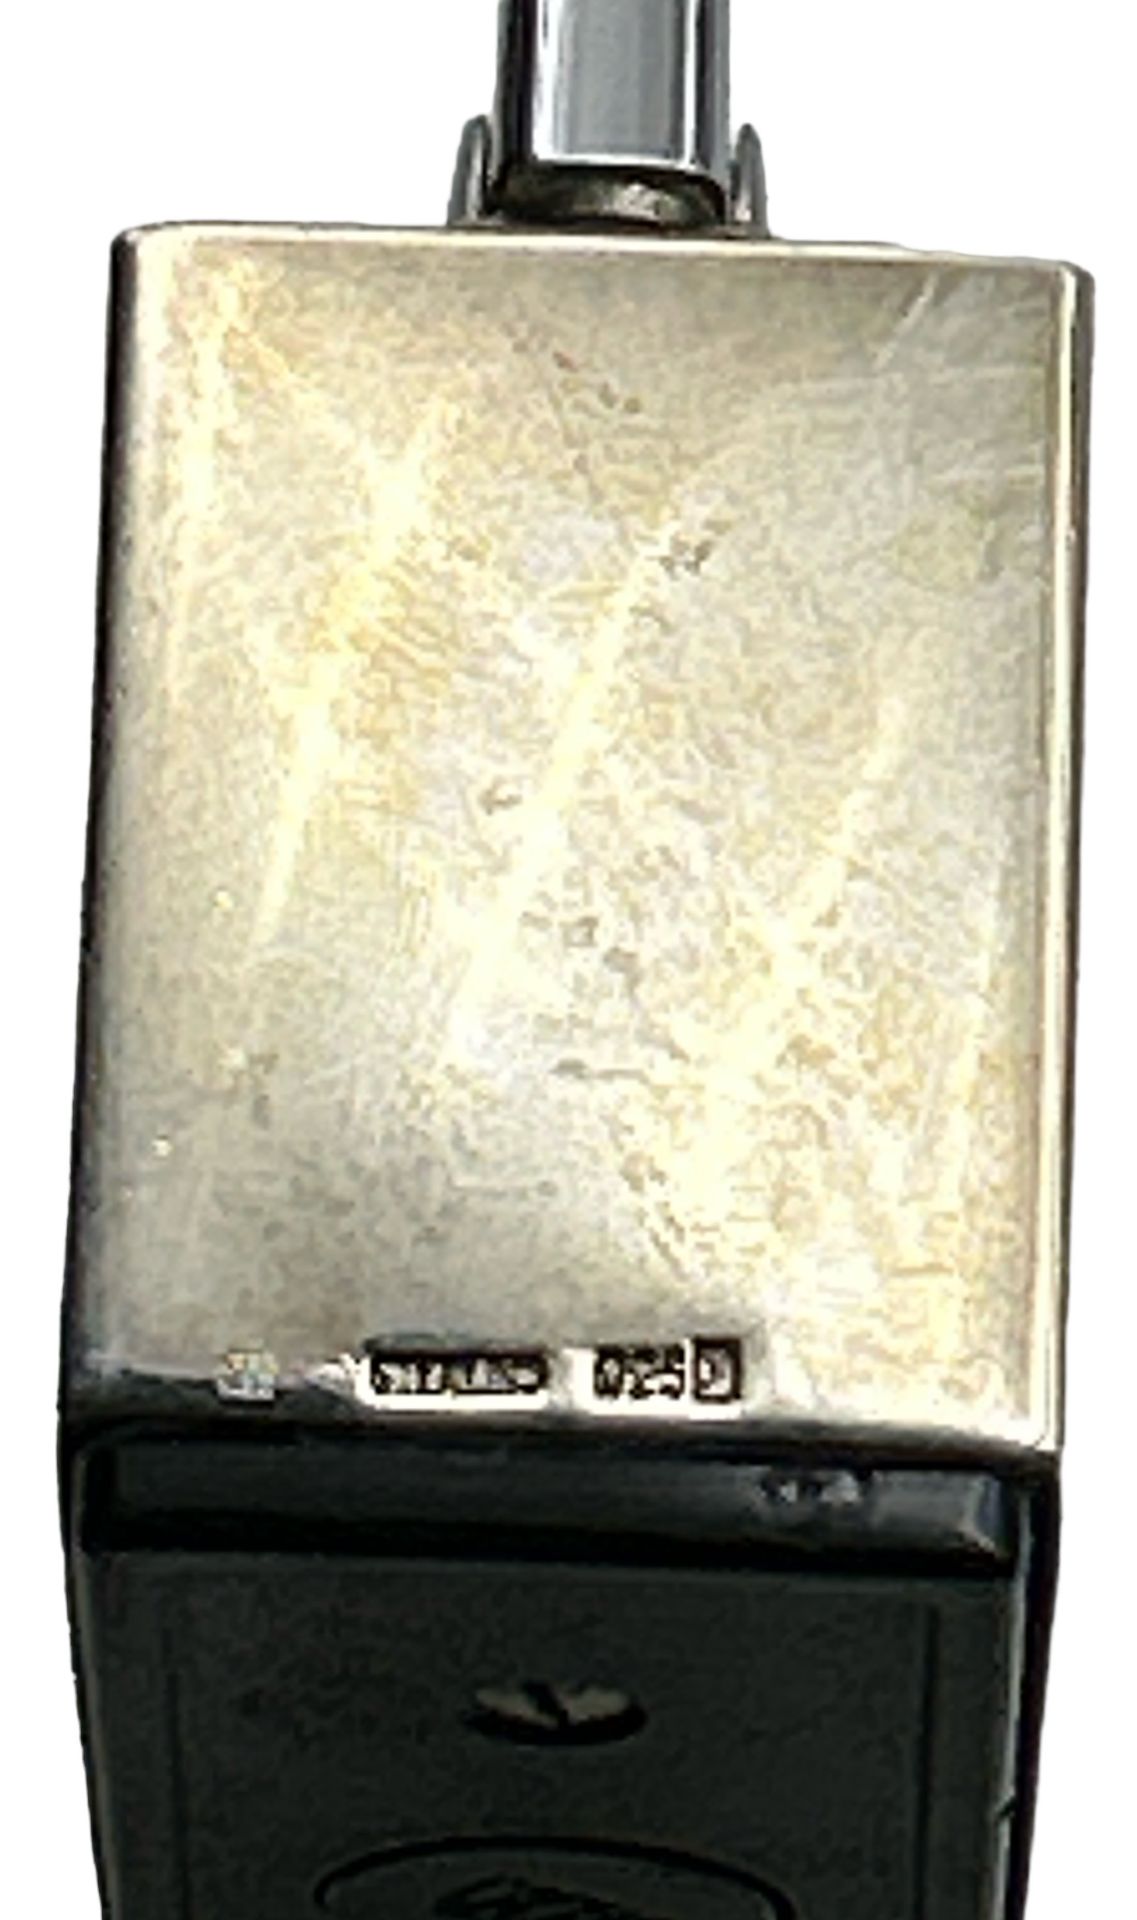 Tischfeuerzeug KW ( Karl Wieden ) -mit massiven Silbermantel, S-925-, funktionstüchtig, 275 gr. - Image 3 of 3